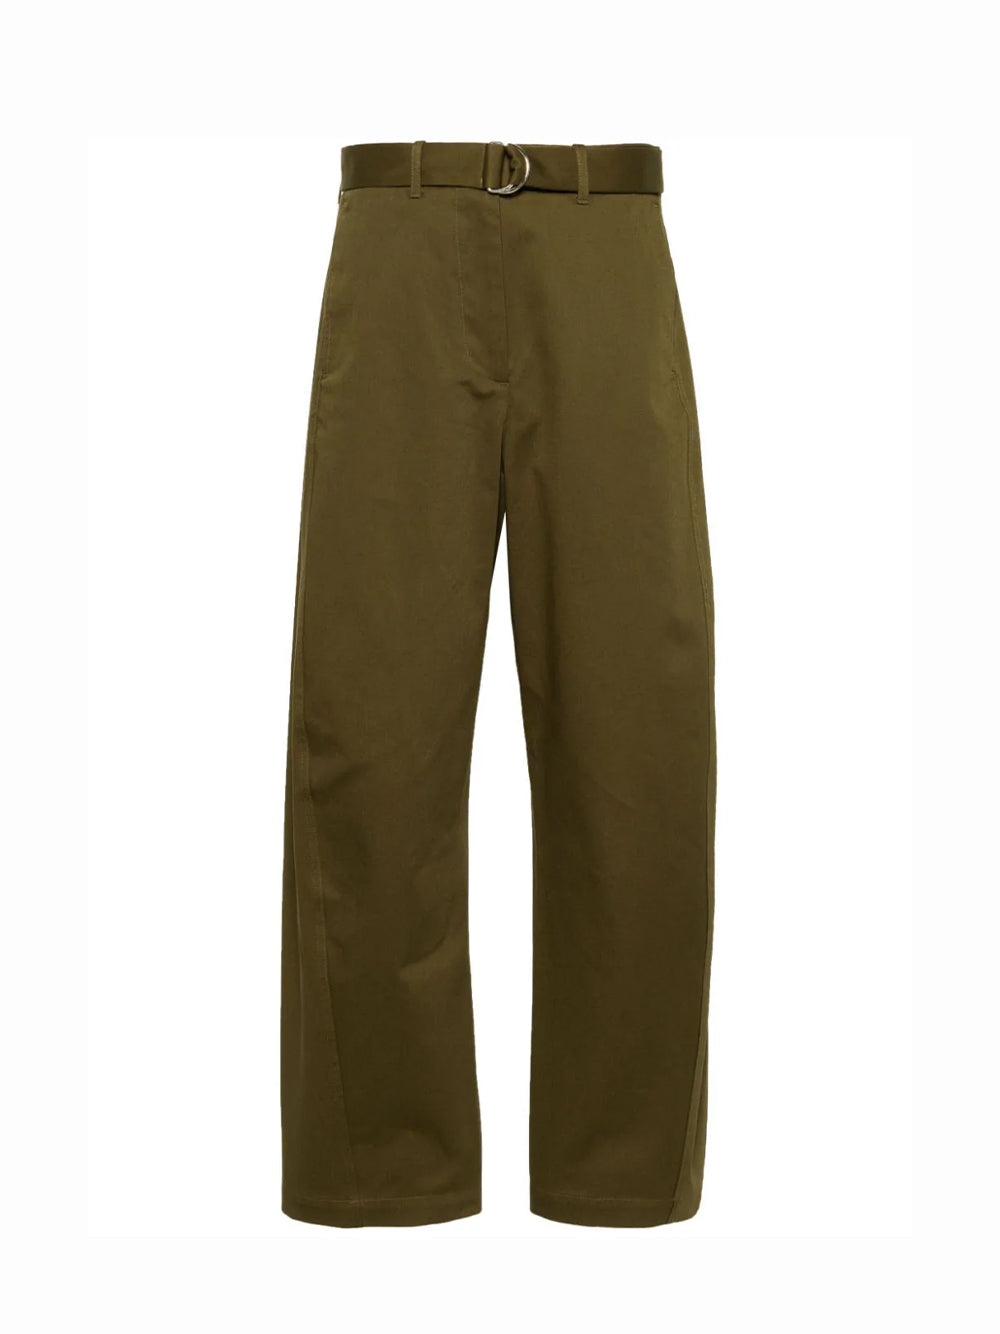 Pantalone/pants Military Green